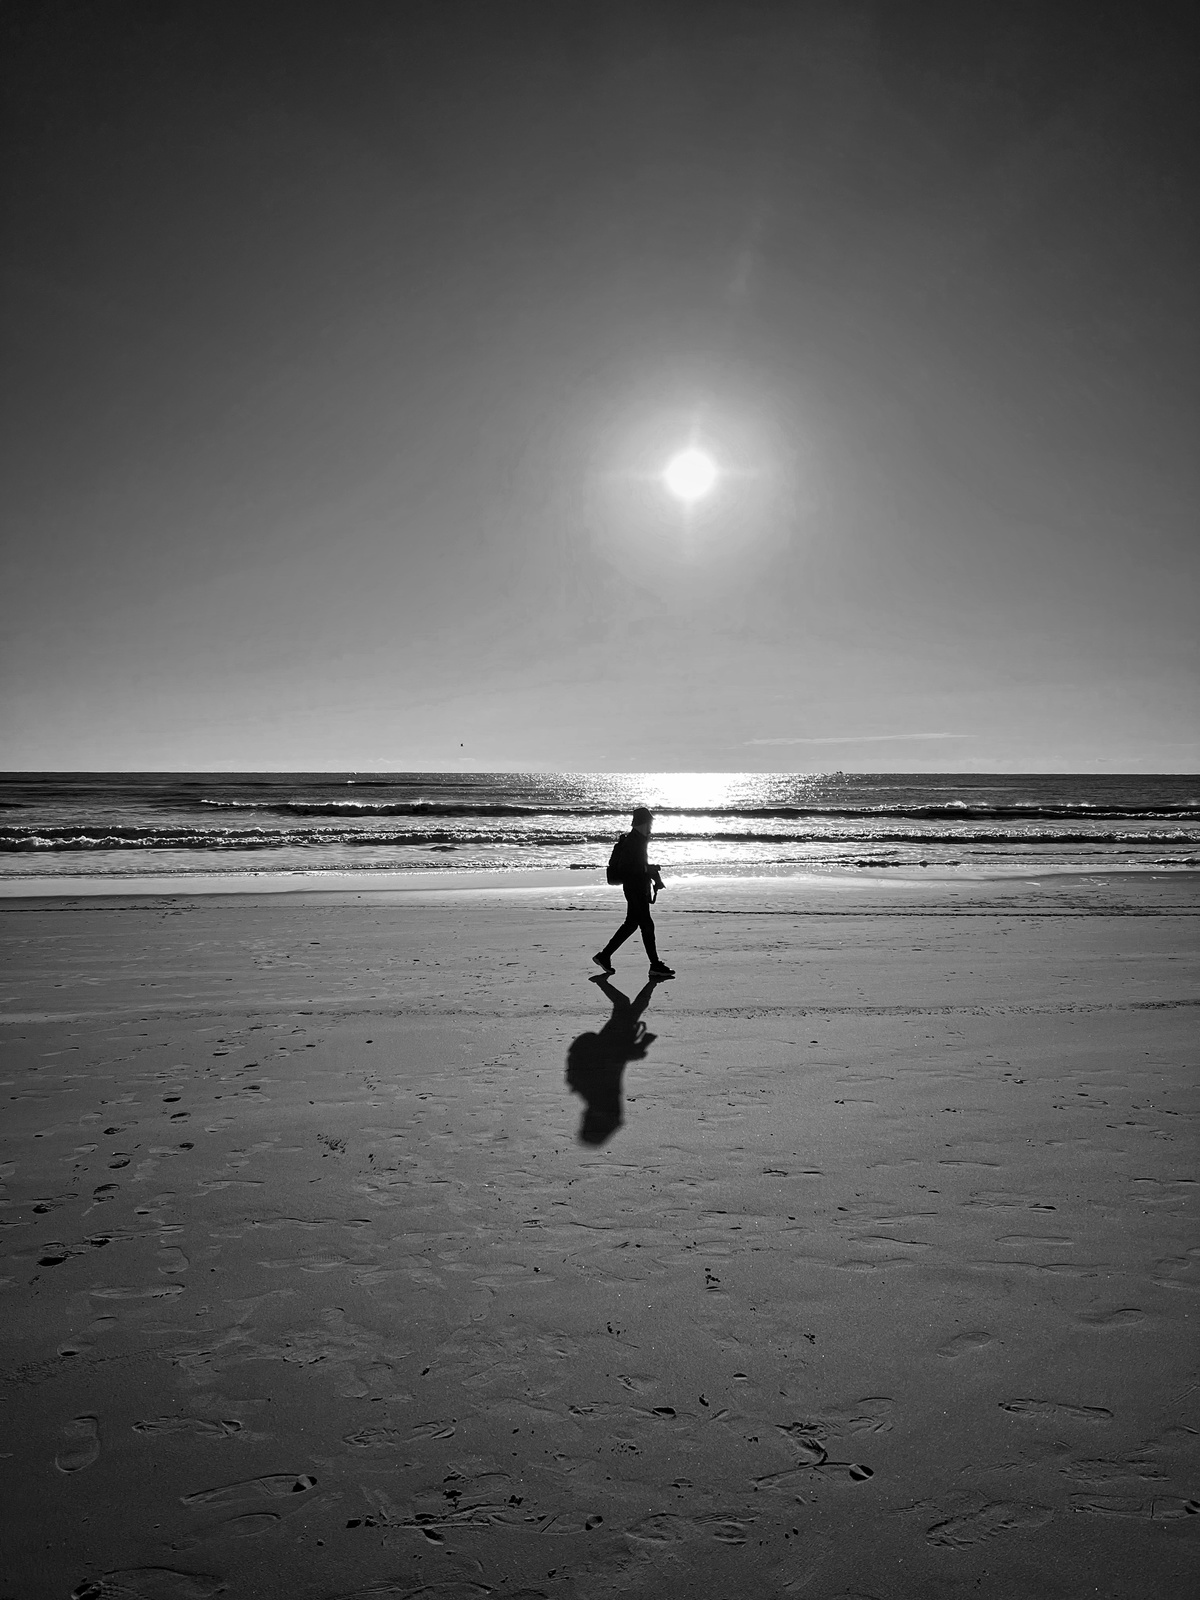 一个人在沙滩上行走 手里拿着一个球 背景是太阳